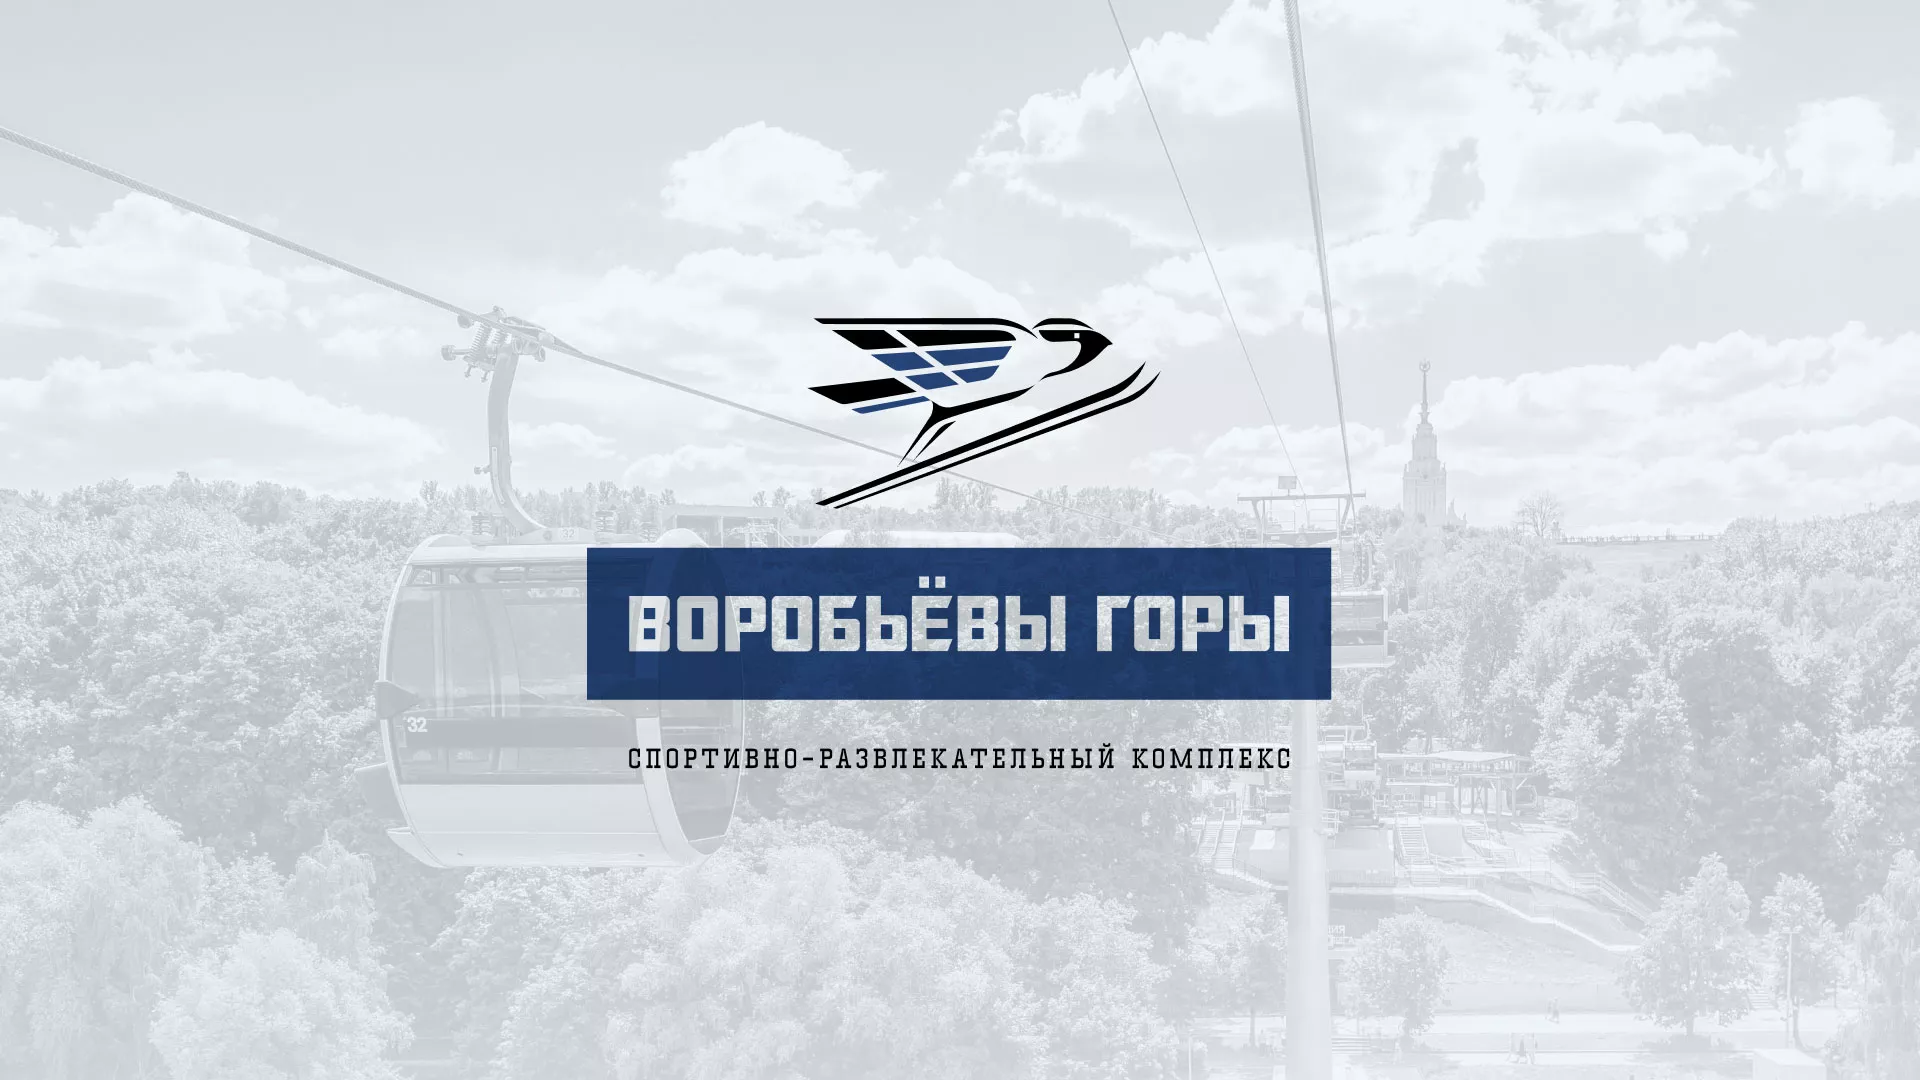 Разработка сайта в Черняховске для спортивно-развлекательного комплекса «Воробьёвы горы»